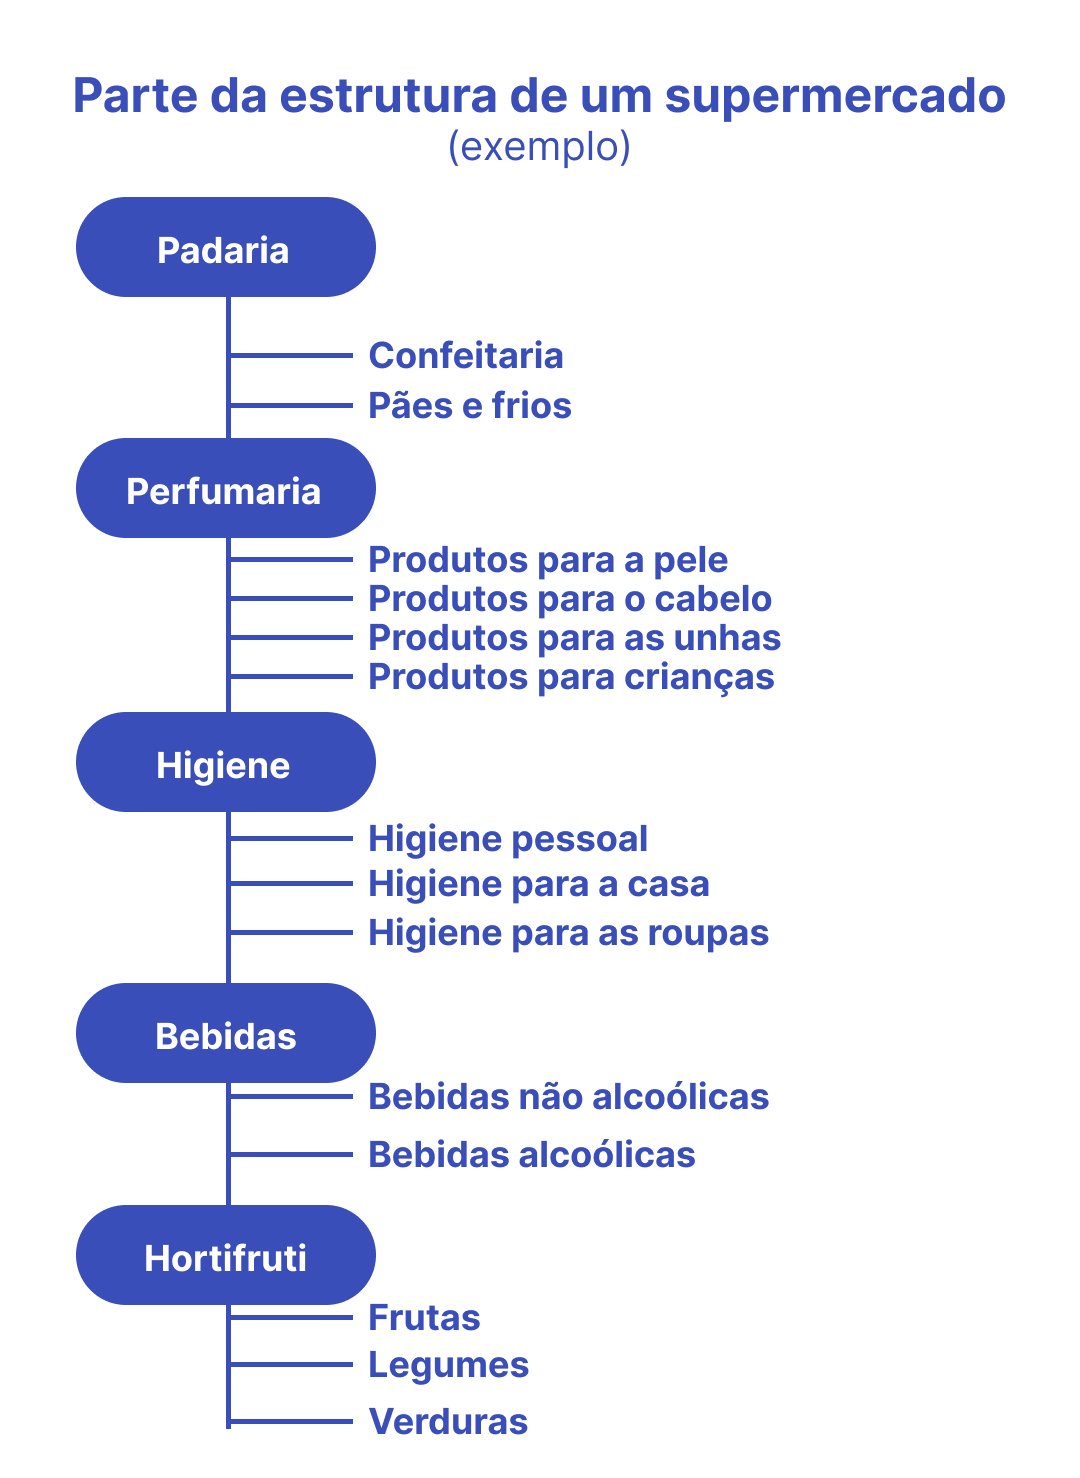 alt text: ilustração que mostra como exemplo parte da organização da estrutura de um supermercado online